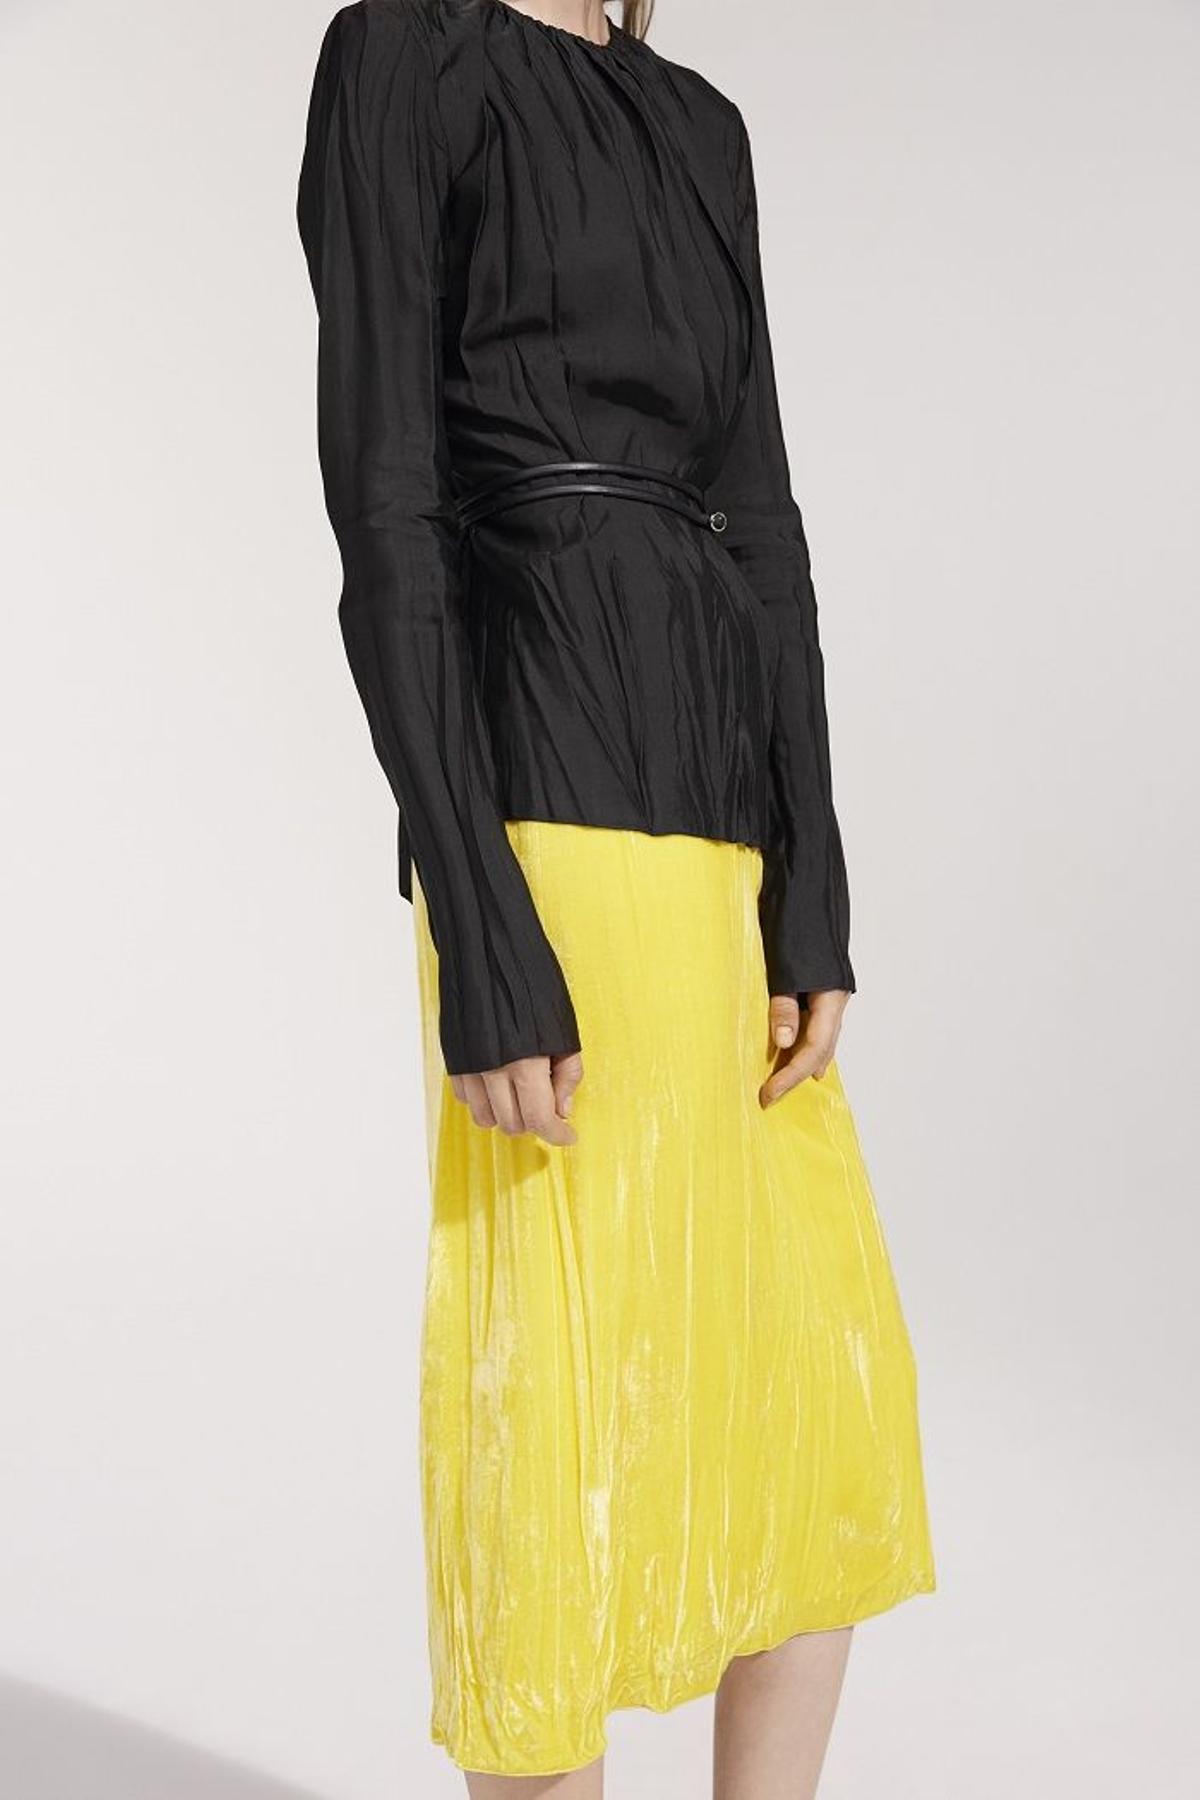 Nina Ricci colección primavera 2016, top negro y falda amarilla